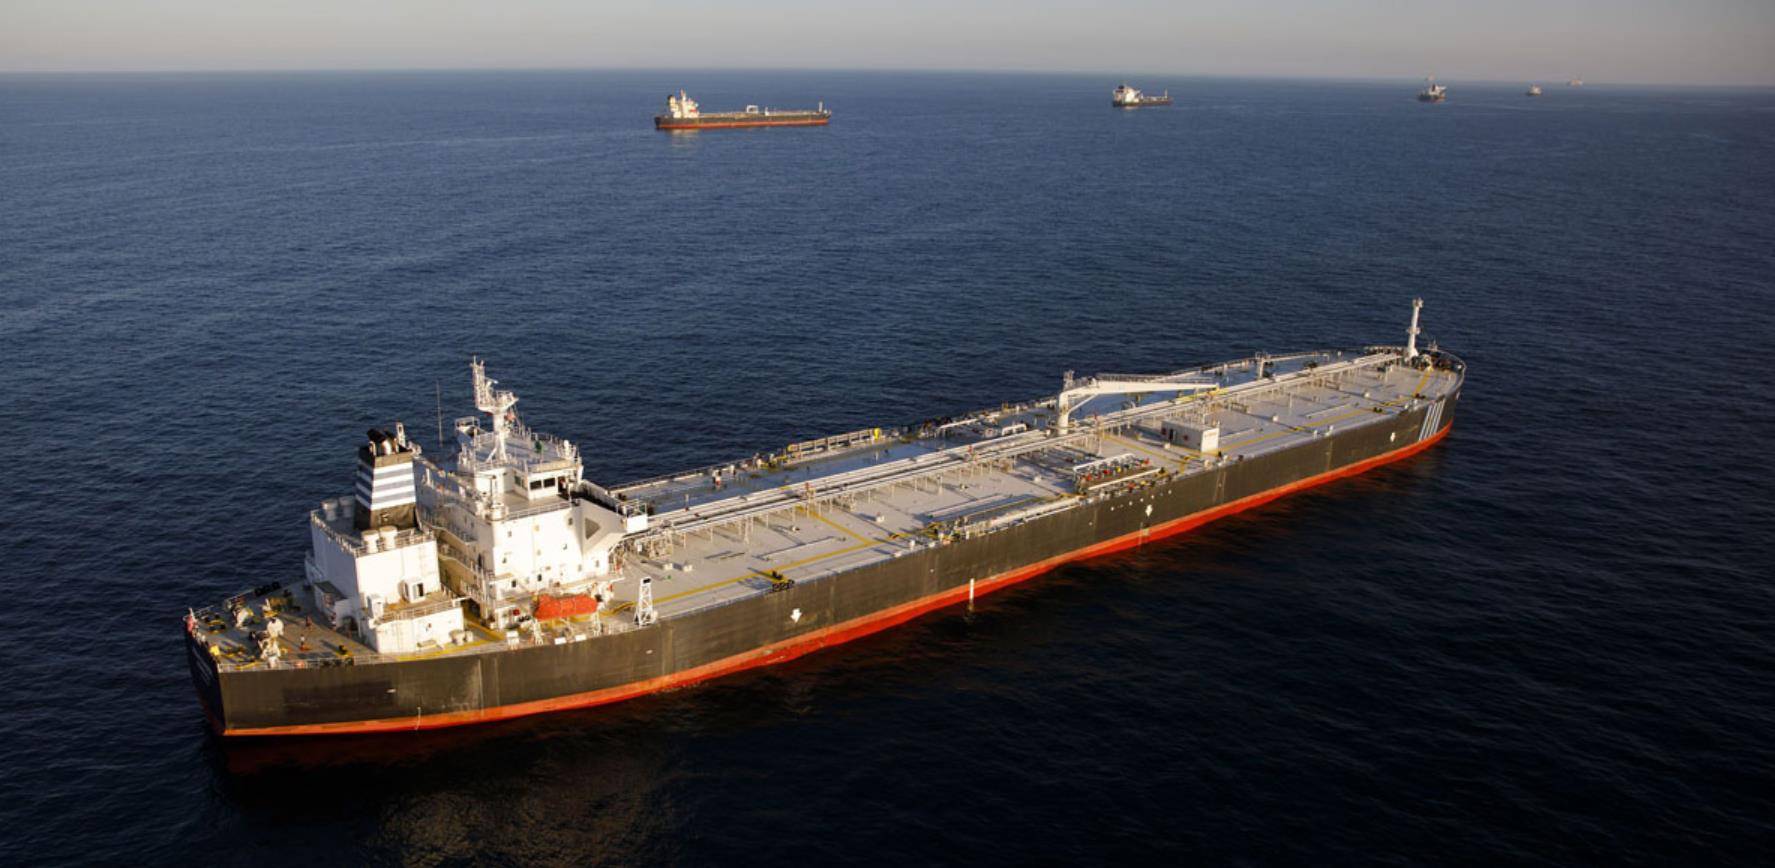 原创             石油价格战愈演愈烈！350艘超级油轮储油，俄罗斯卢布即将抗不住